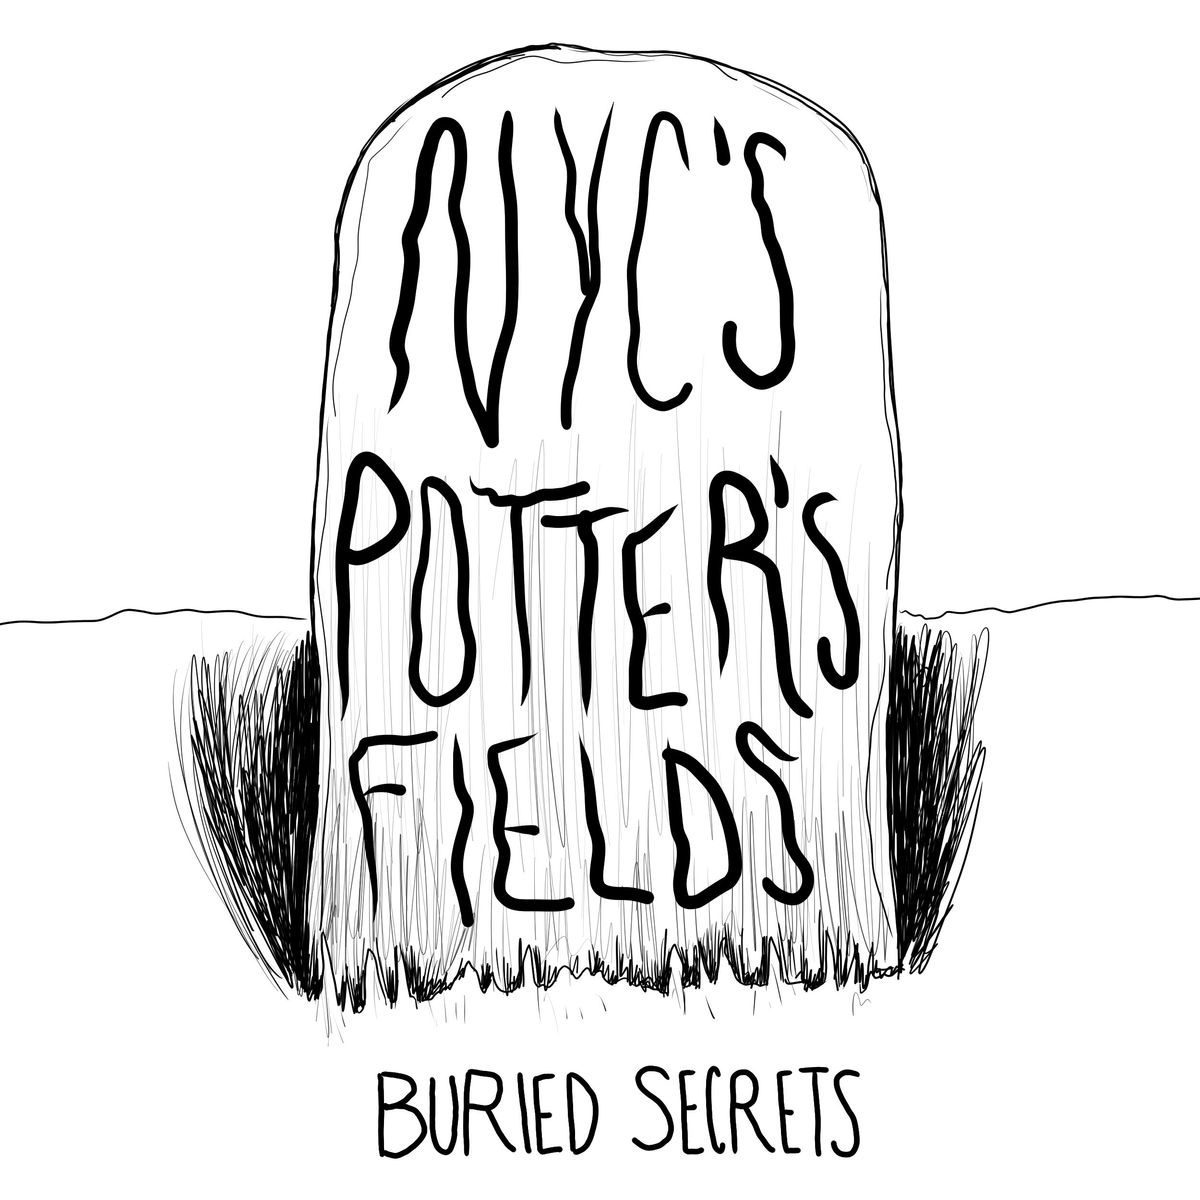 New York City Potter's Fields